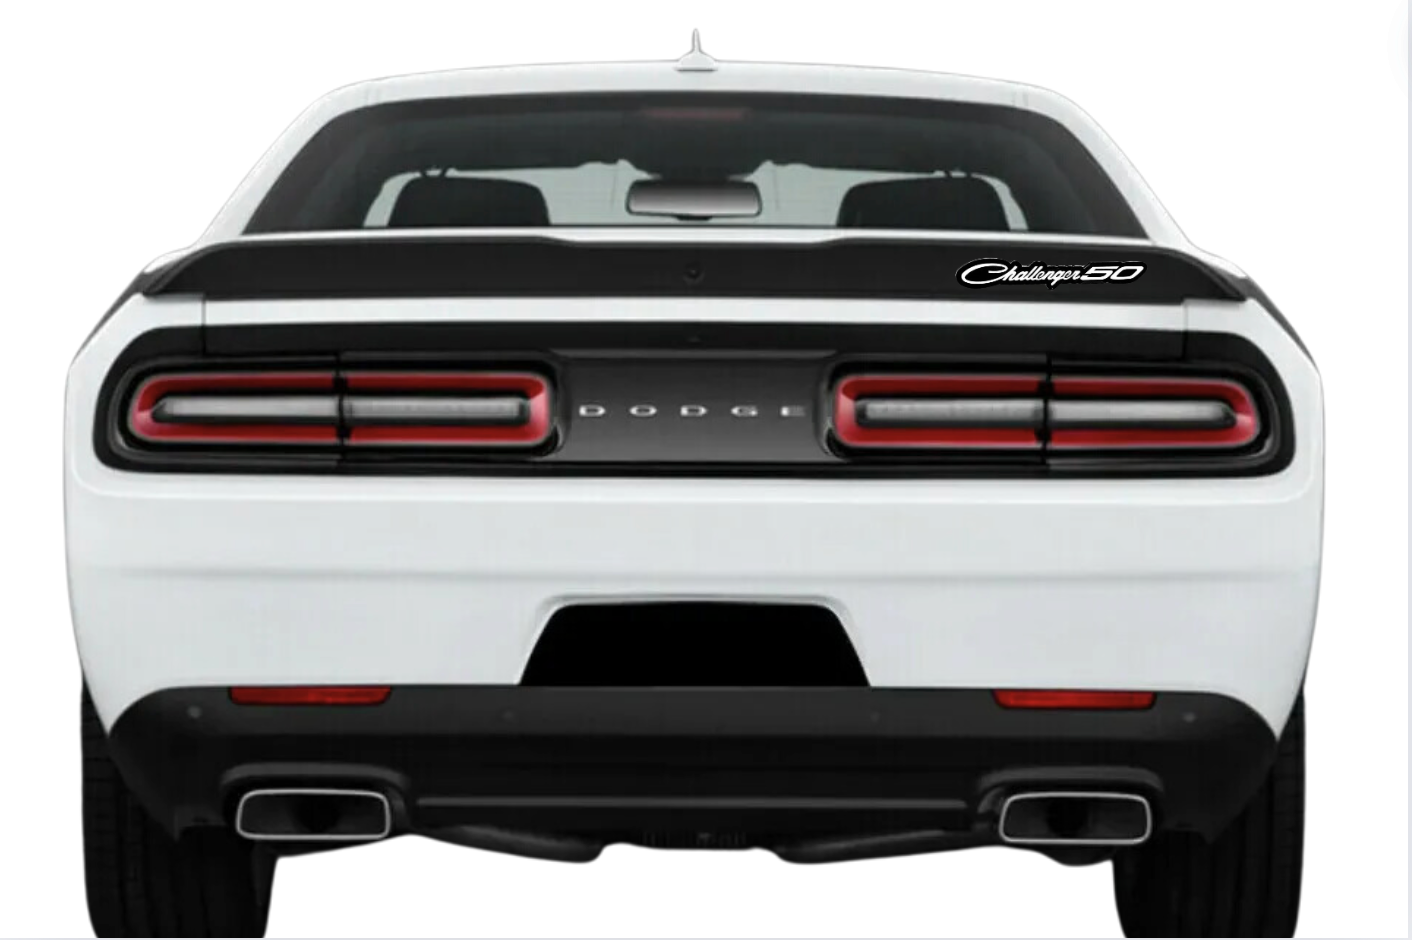 Dodge tailgate trunk rear emblem with Dodge Challenger 50 logo